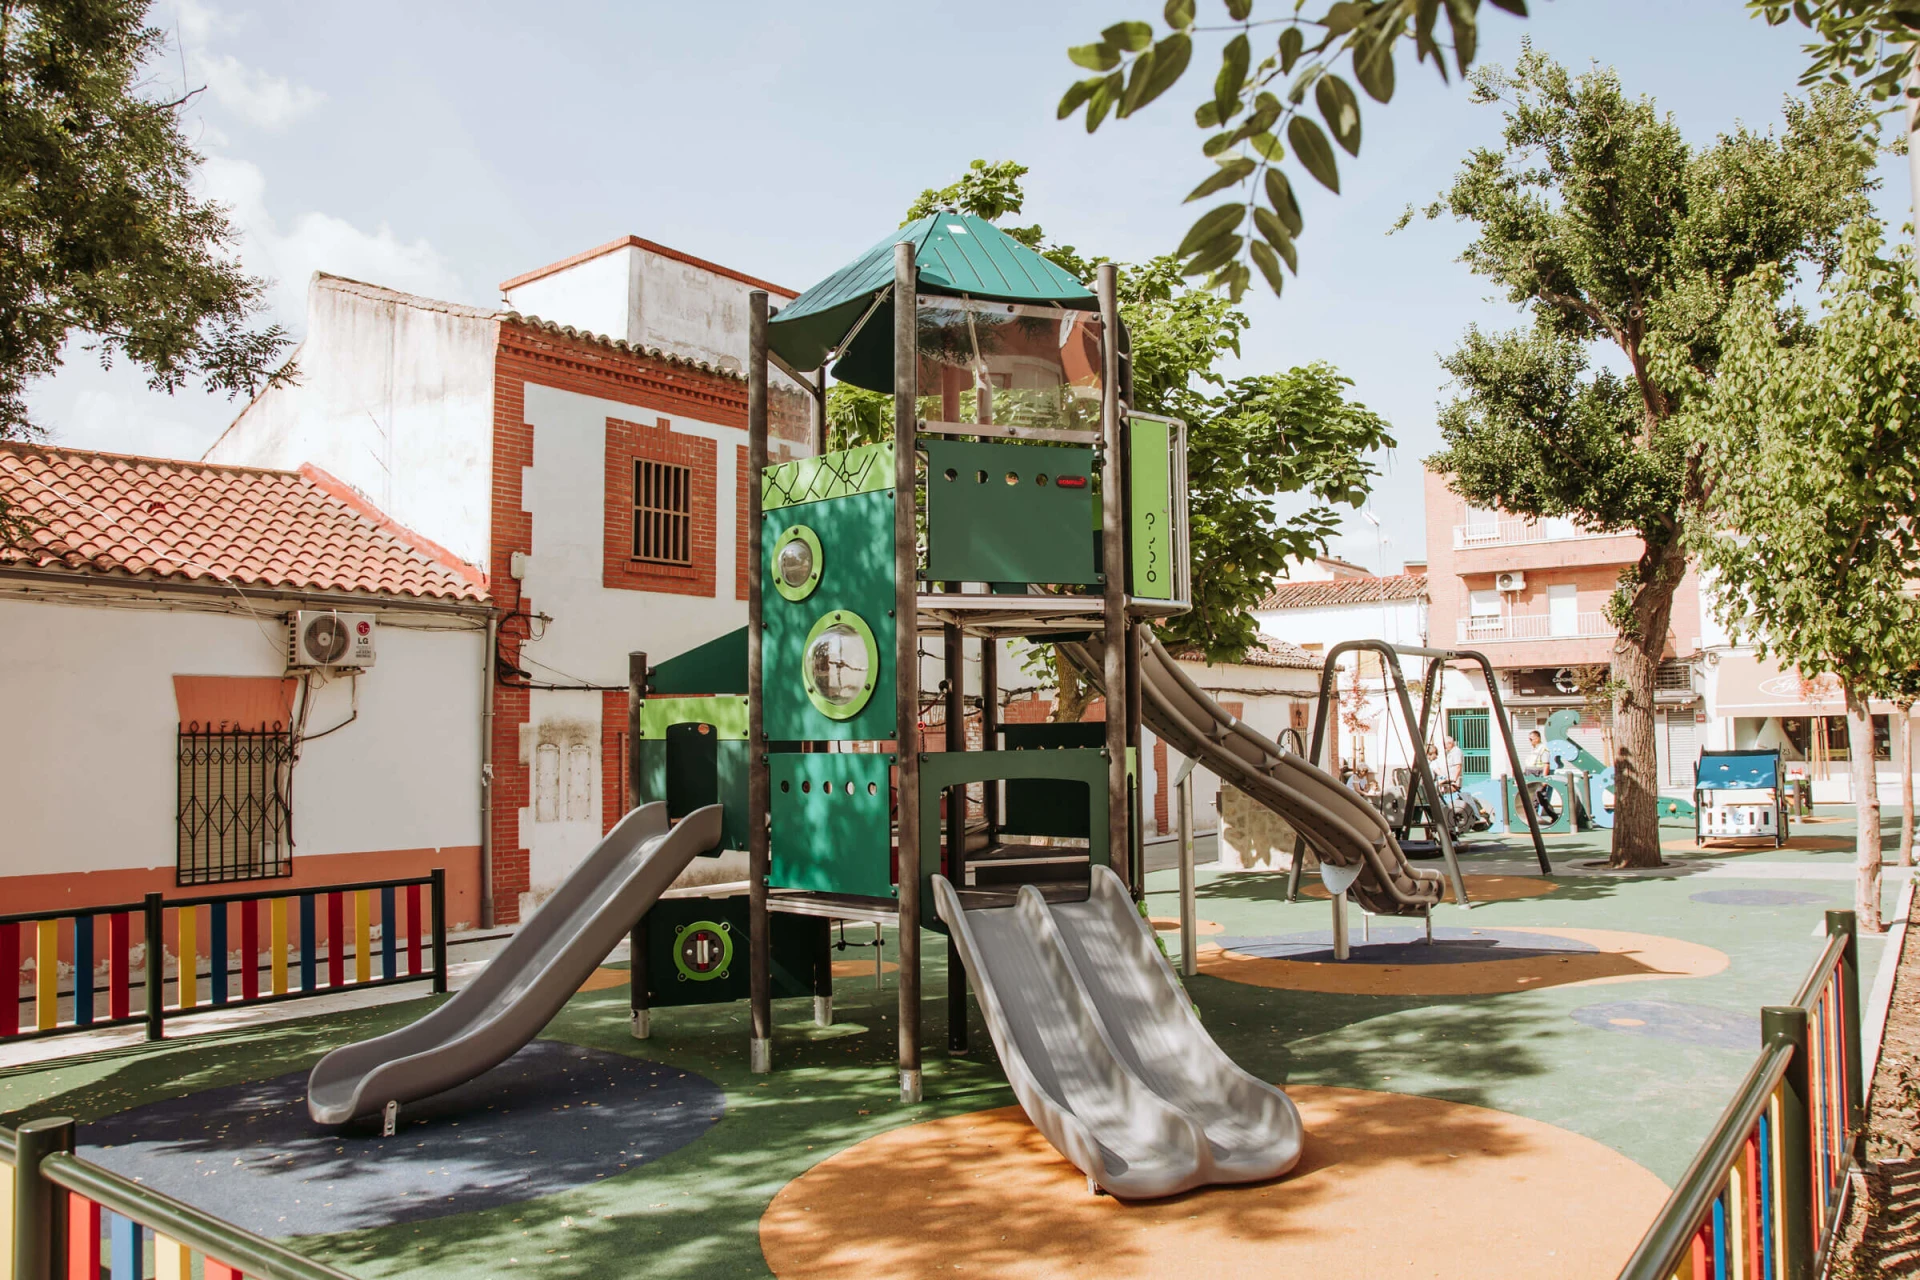 parco giochi in Spagna realizzato con materiali riciclati.